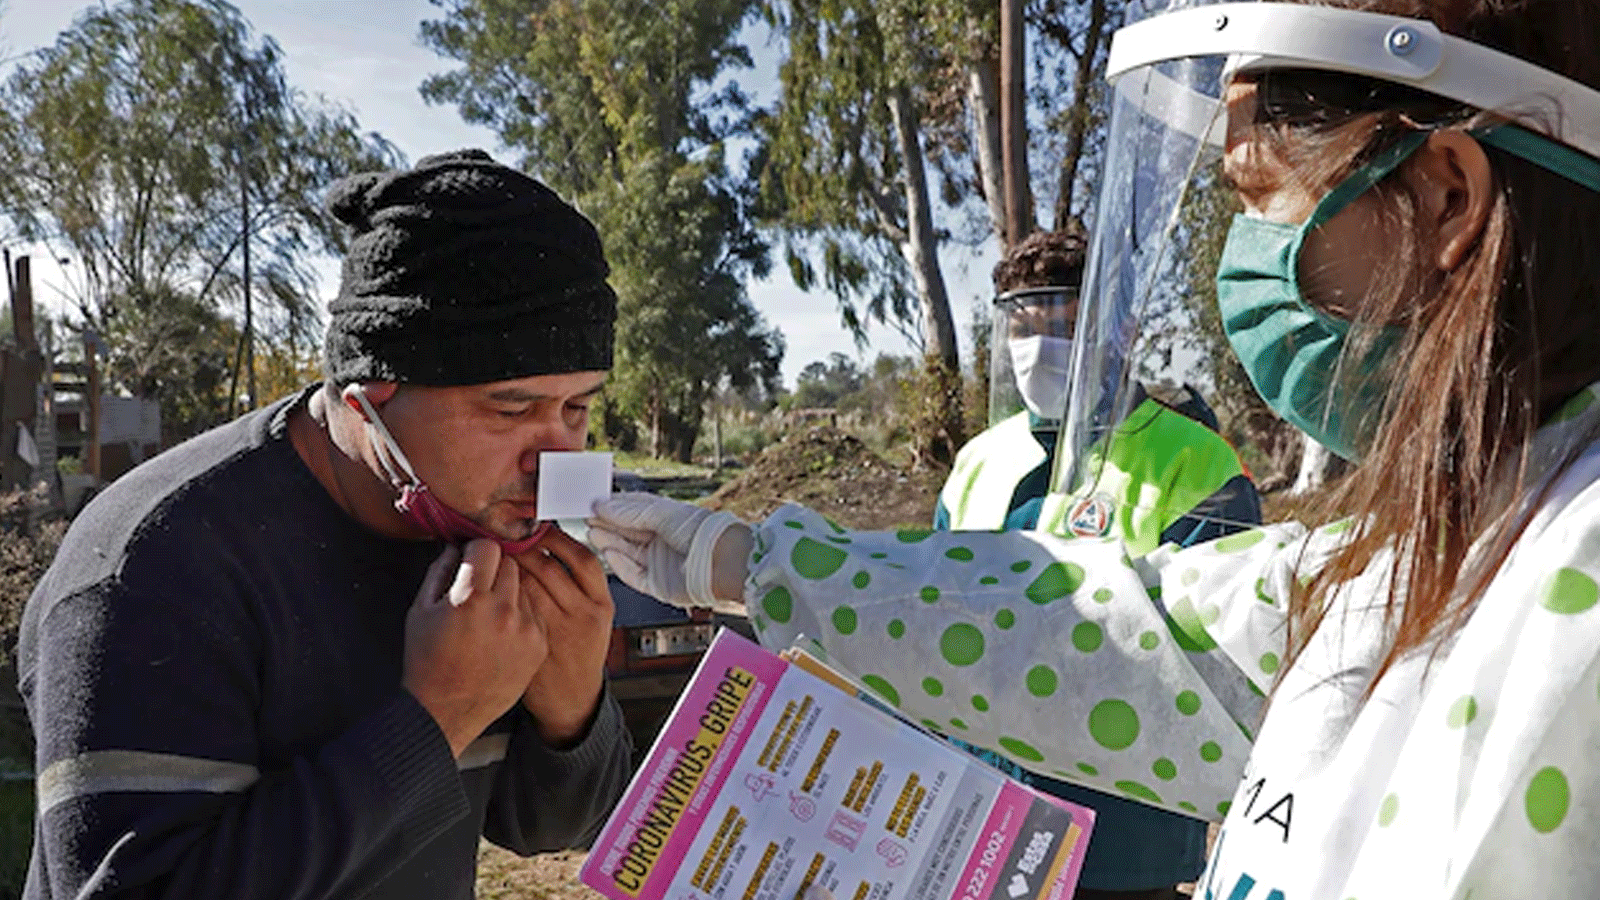 عمال صحة يجرون اختباراً لحاسة الشم على أحد السكان في حي ألتوس دي سان لورينزو بالقرب من مدينة لا بلاتا، الأرجنتين، بهدف رصد فقدانها عند مرضى كوفيد-19.24 أيار/مايو 2020.